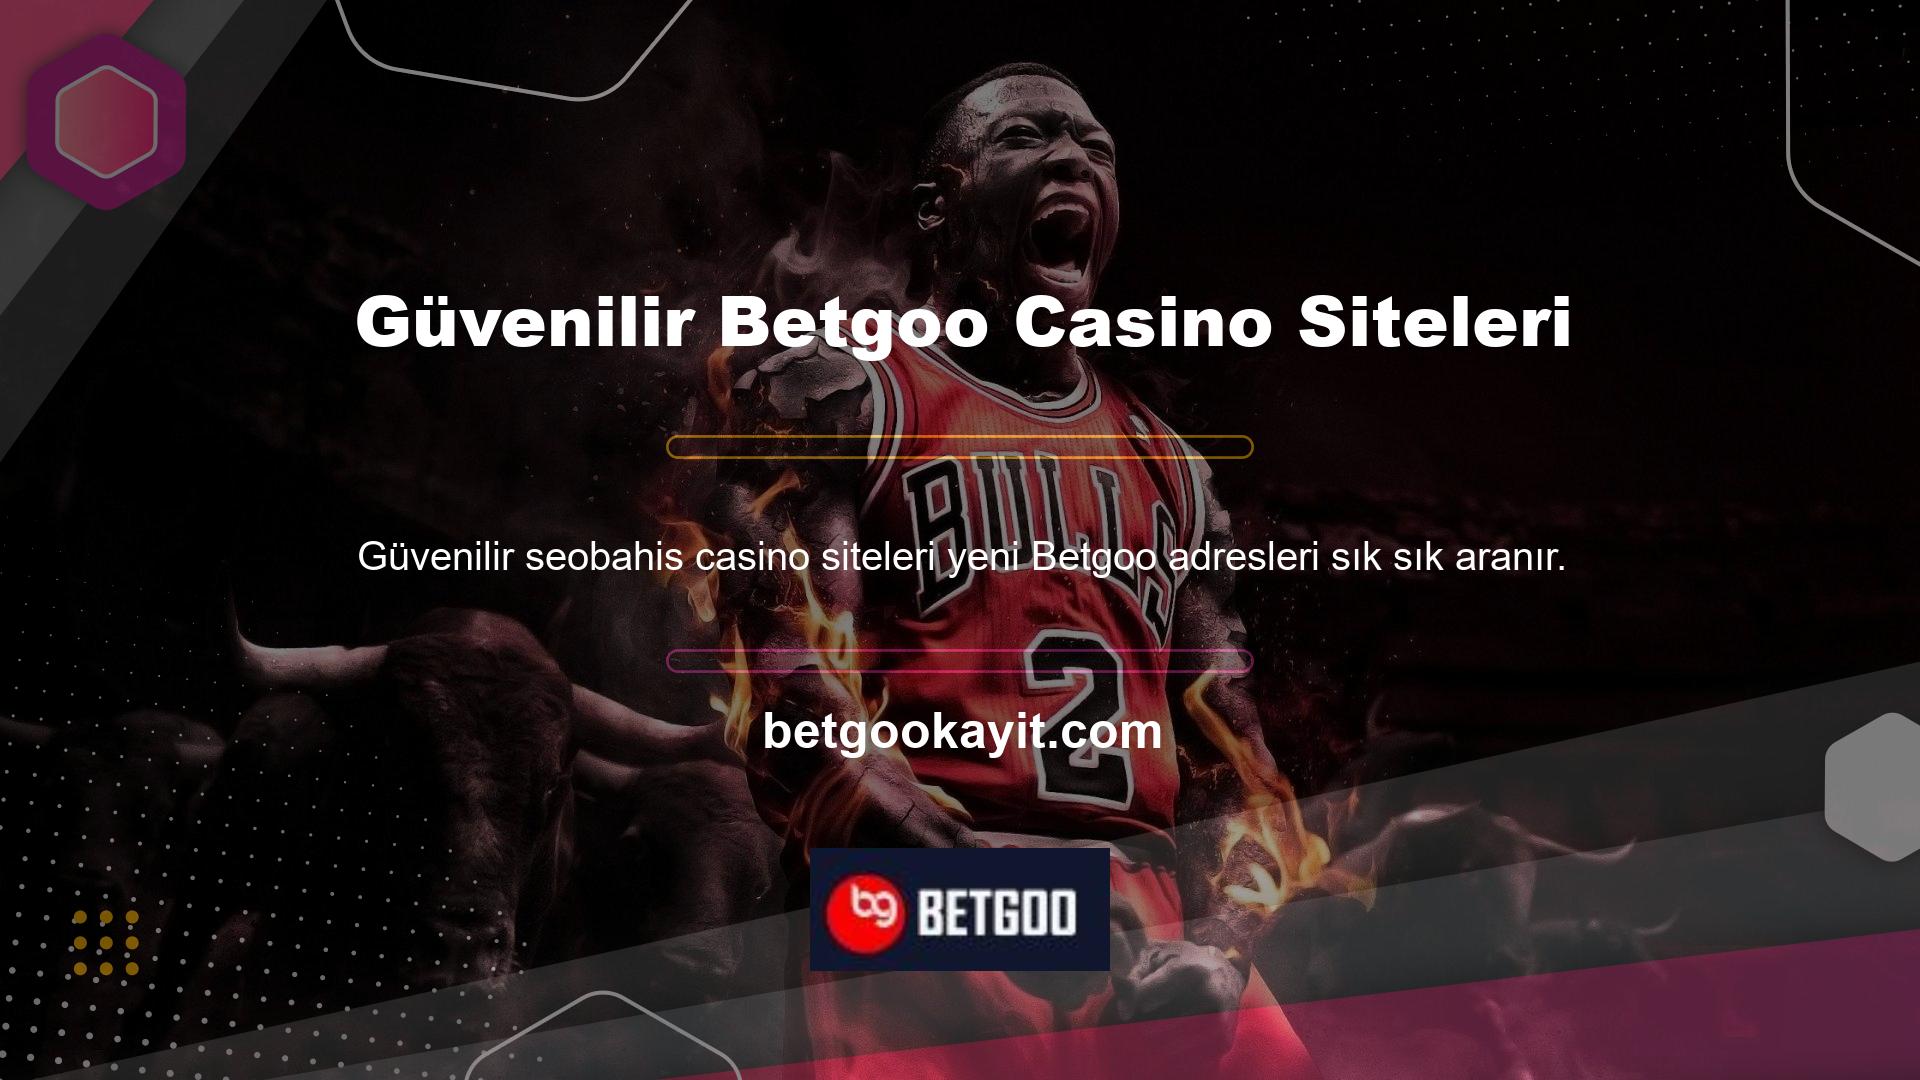 Başta BTK tarafından engellenenler olmak üzere Betgoo güvenilir casino sitelerinin adresleri sürekli değişmektedir